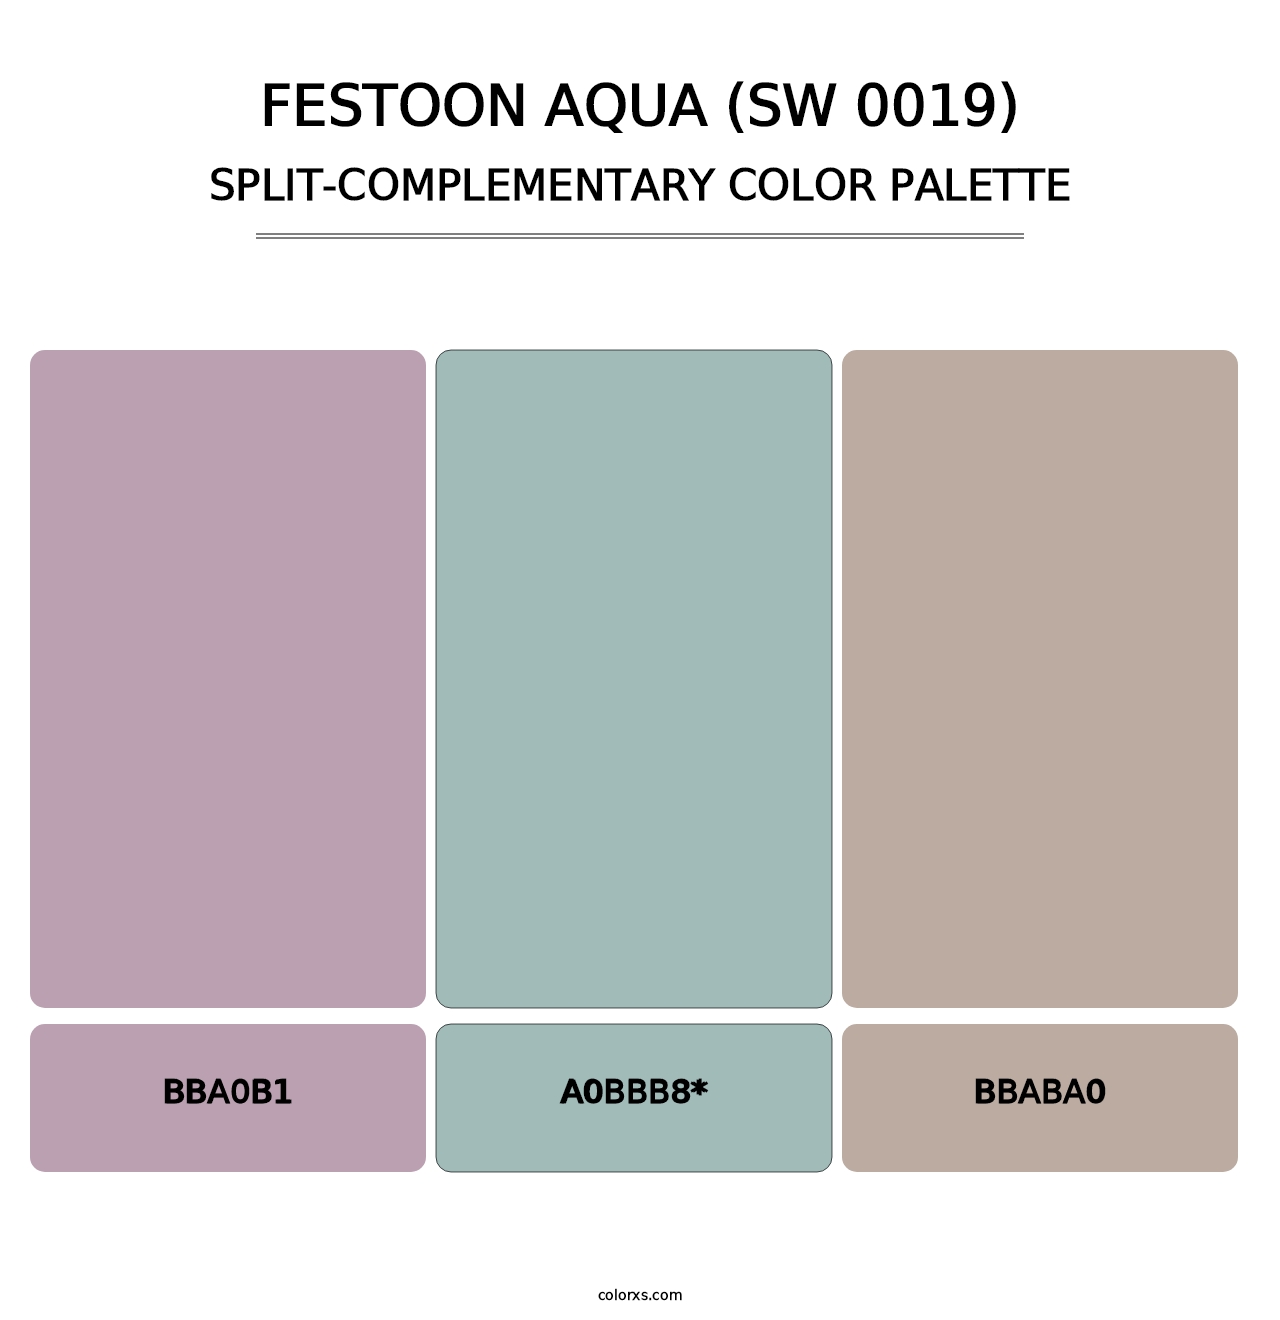 Festoon Aqua (SW 0019) - Split-Complementary Color Palette